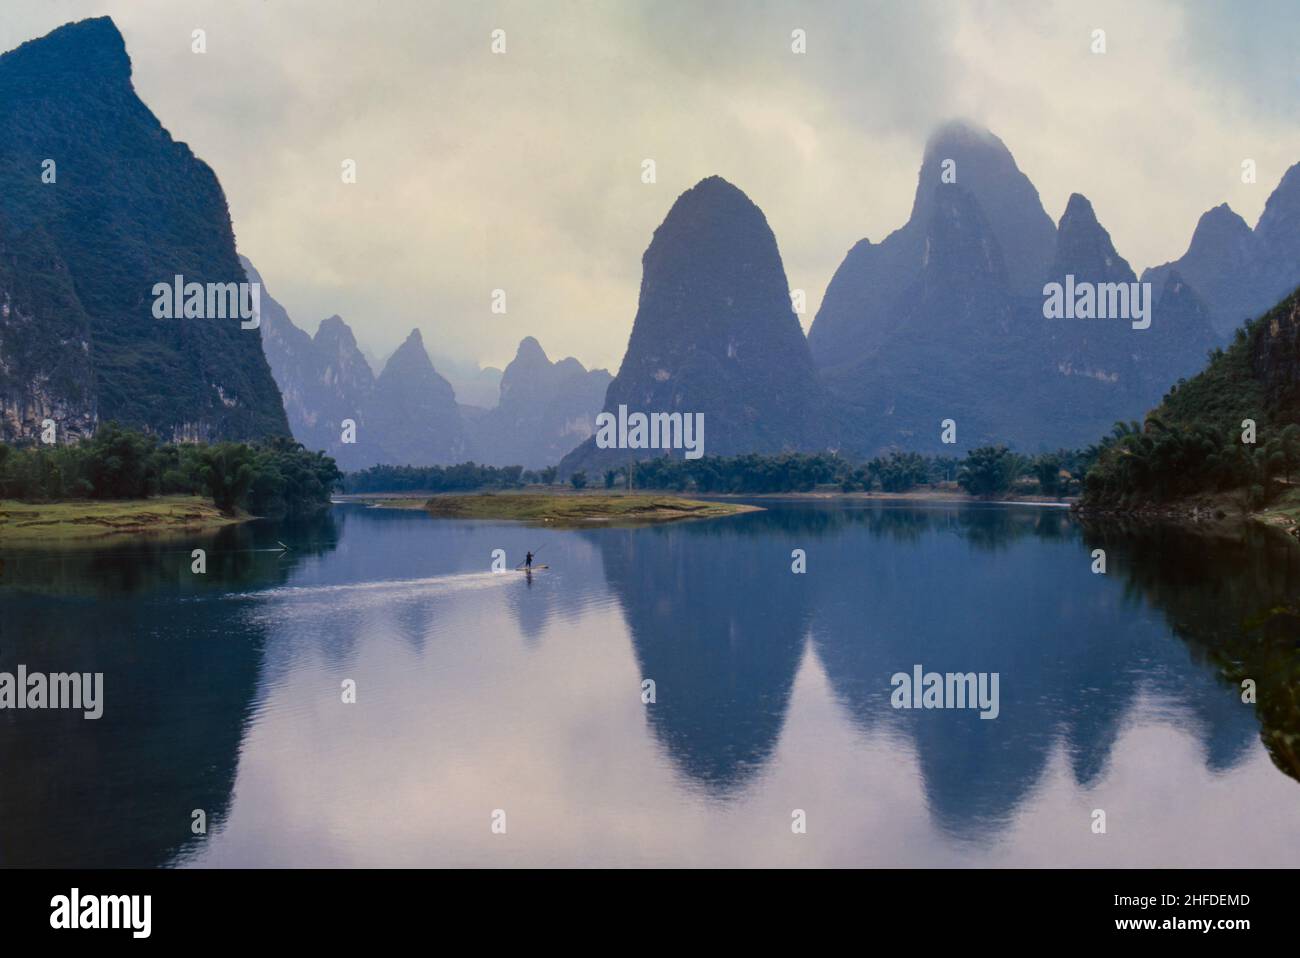 China, Guanxi Province, Li River at Xing Ping Stock Photo